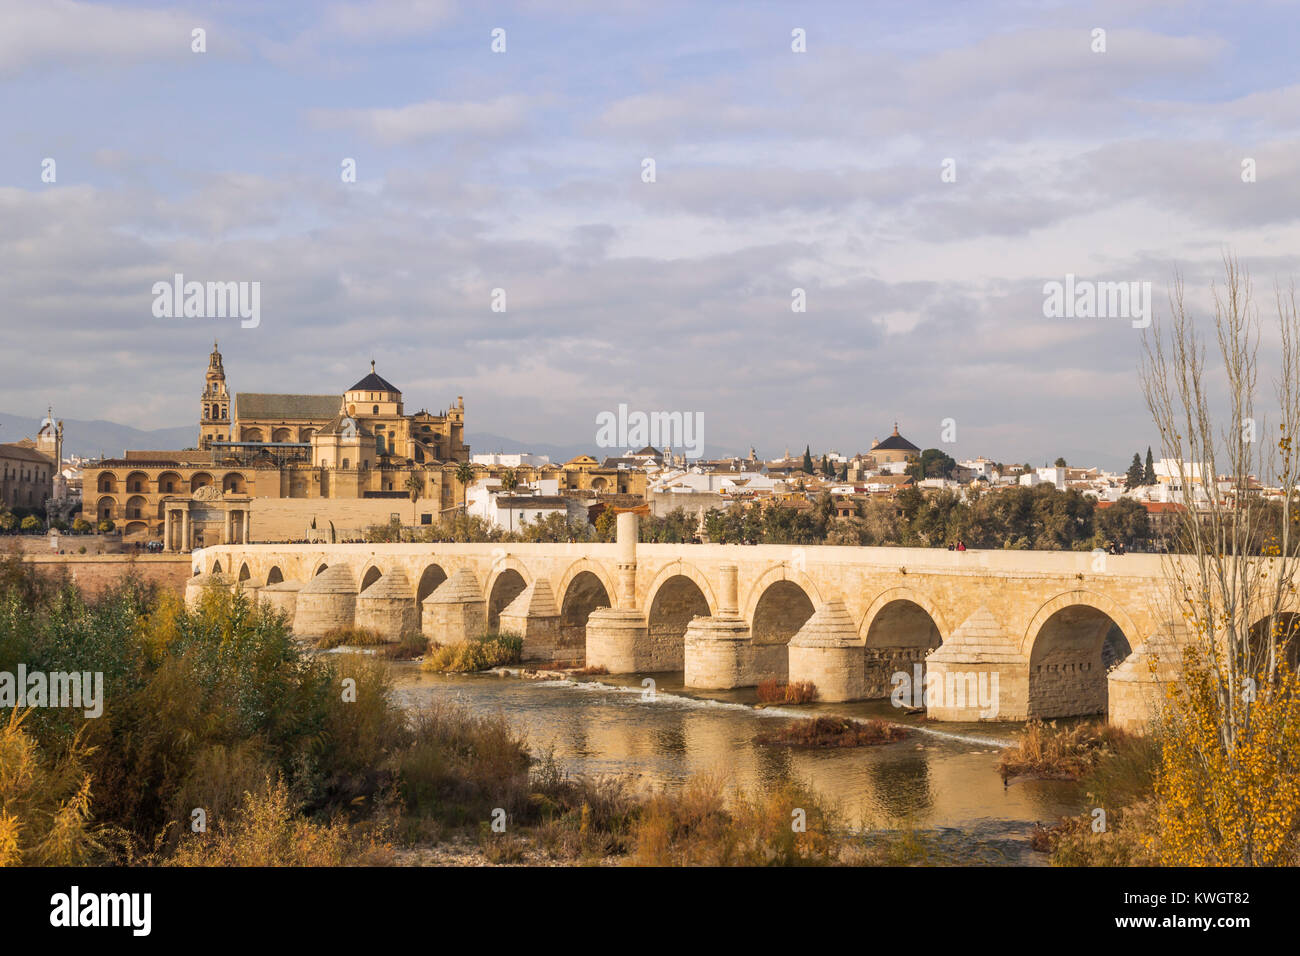 Cordoba, Andalusien, Spanien. Die römische Brücke über den Fluss Guadalquivir, die Moschee - die Kathedrale von Córdoba aka Große Moschee von Córdoba Stockfoto